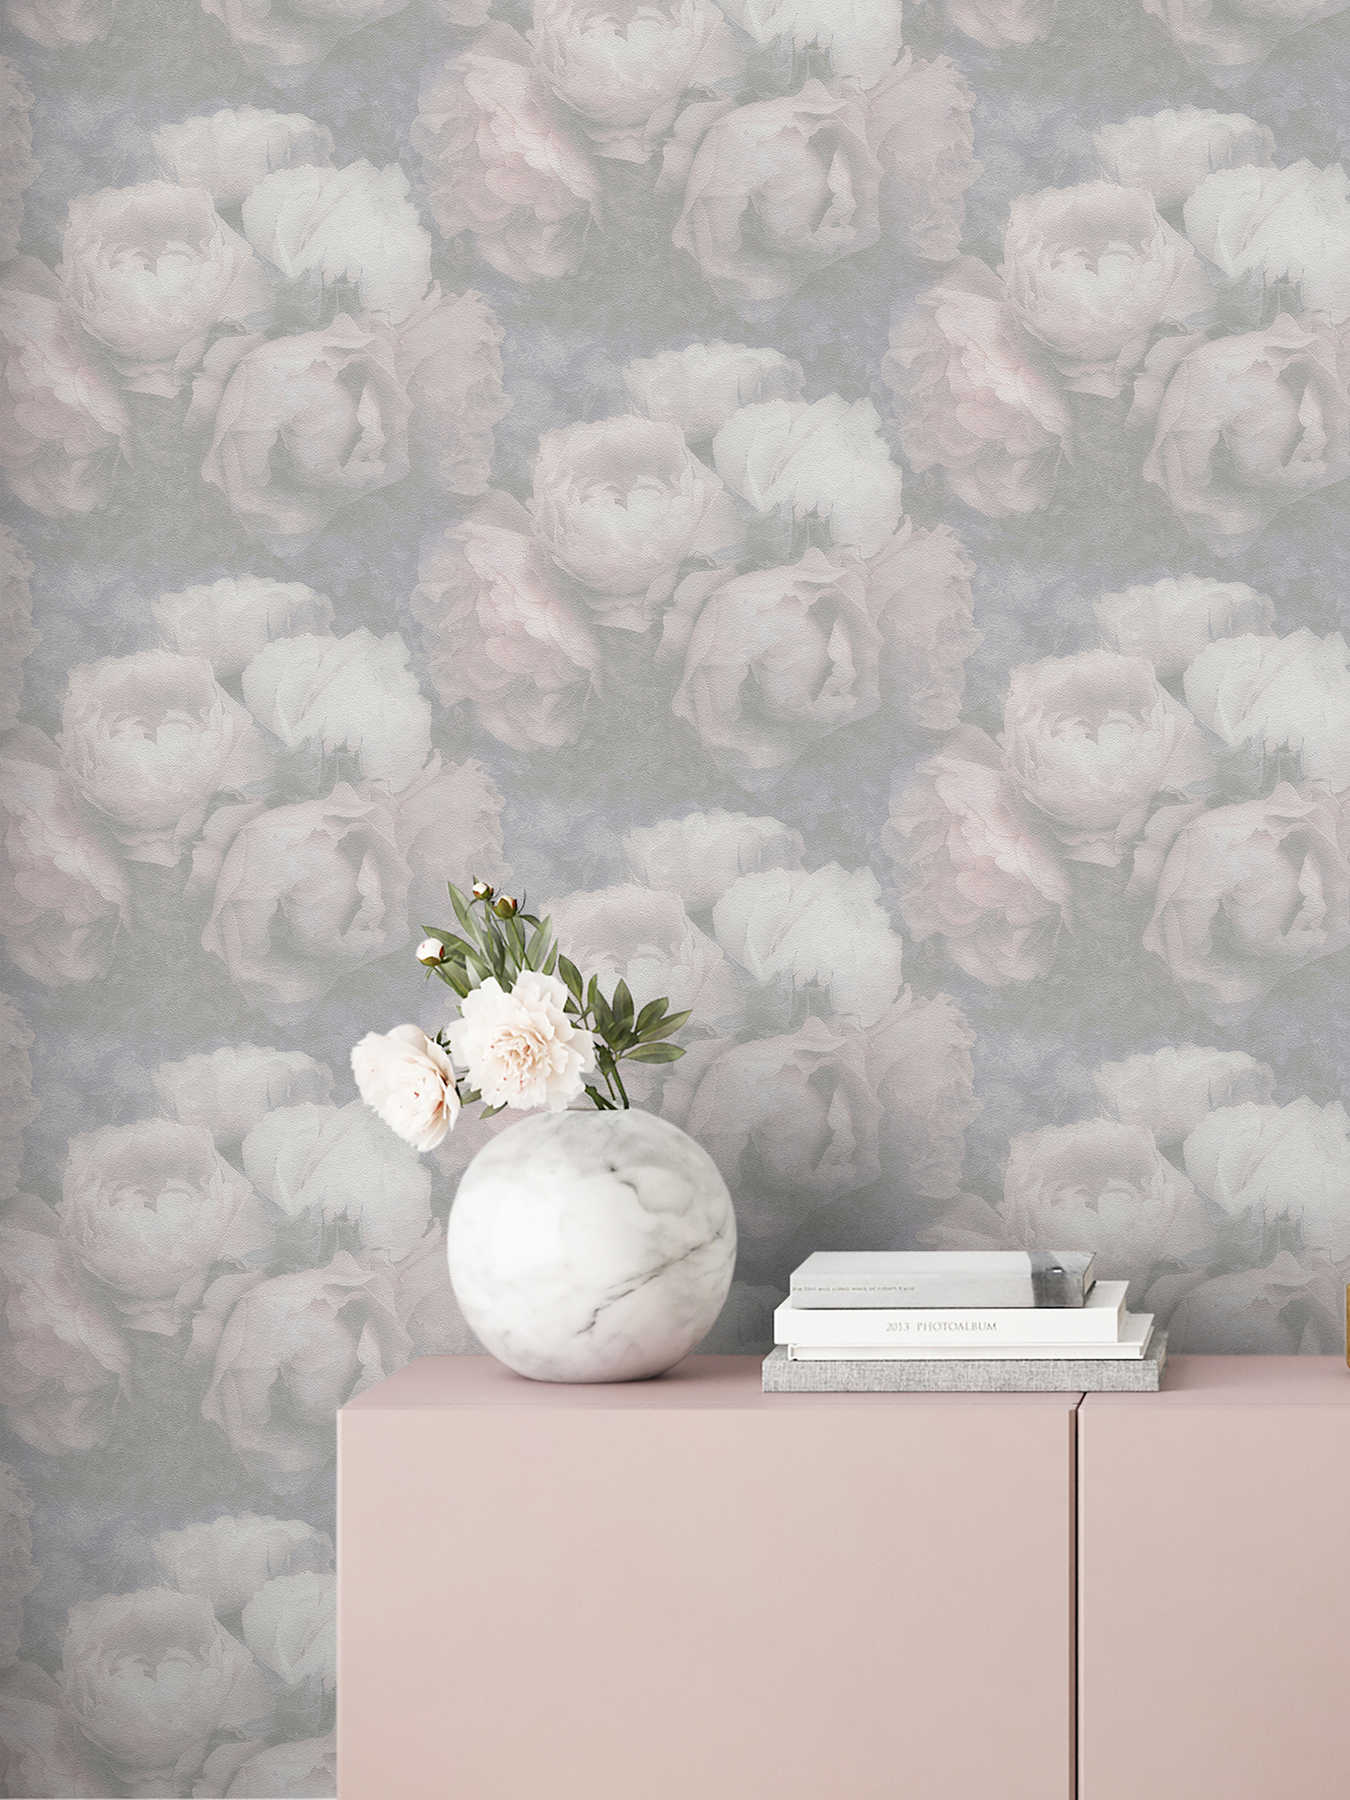             Pastell Tapete mit Pfingstrosen – Rosa, Grau, Weiß
        